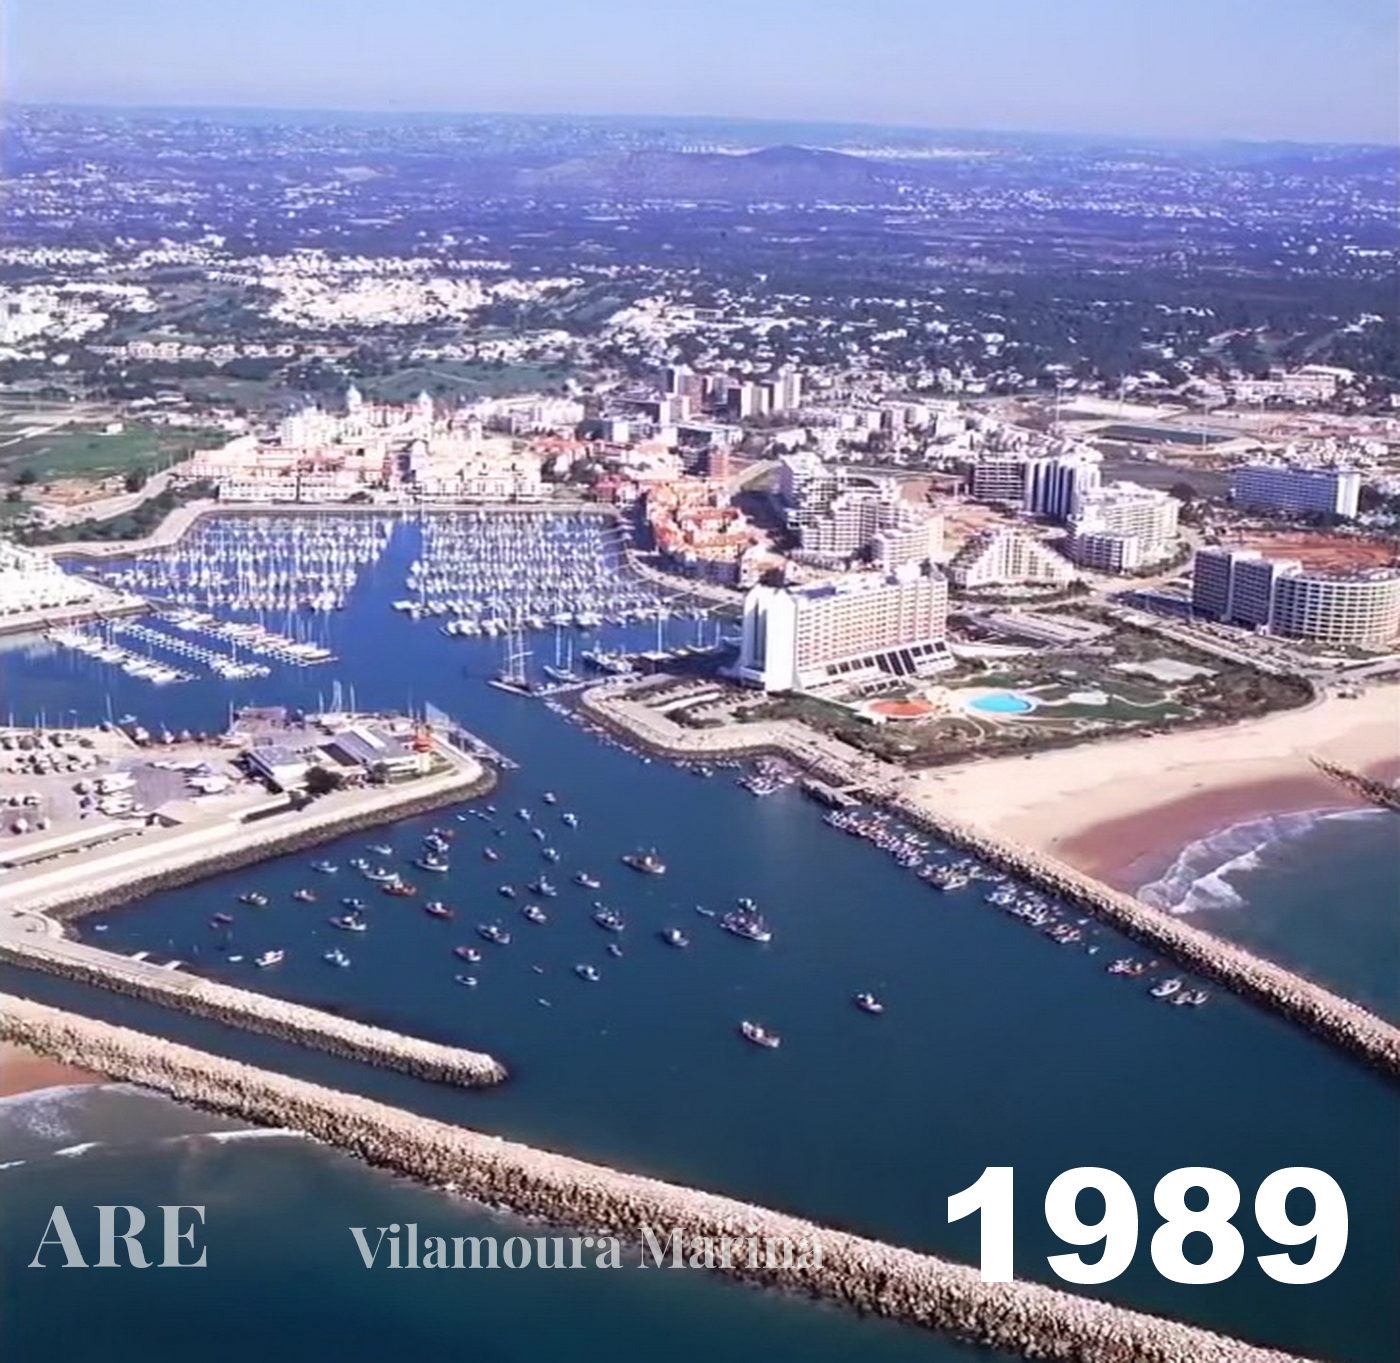 Vista aérea de 1989 da Marina de Vilamoura ilustrando o desenvolvimento e transformação contínuos da área.